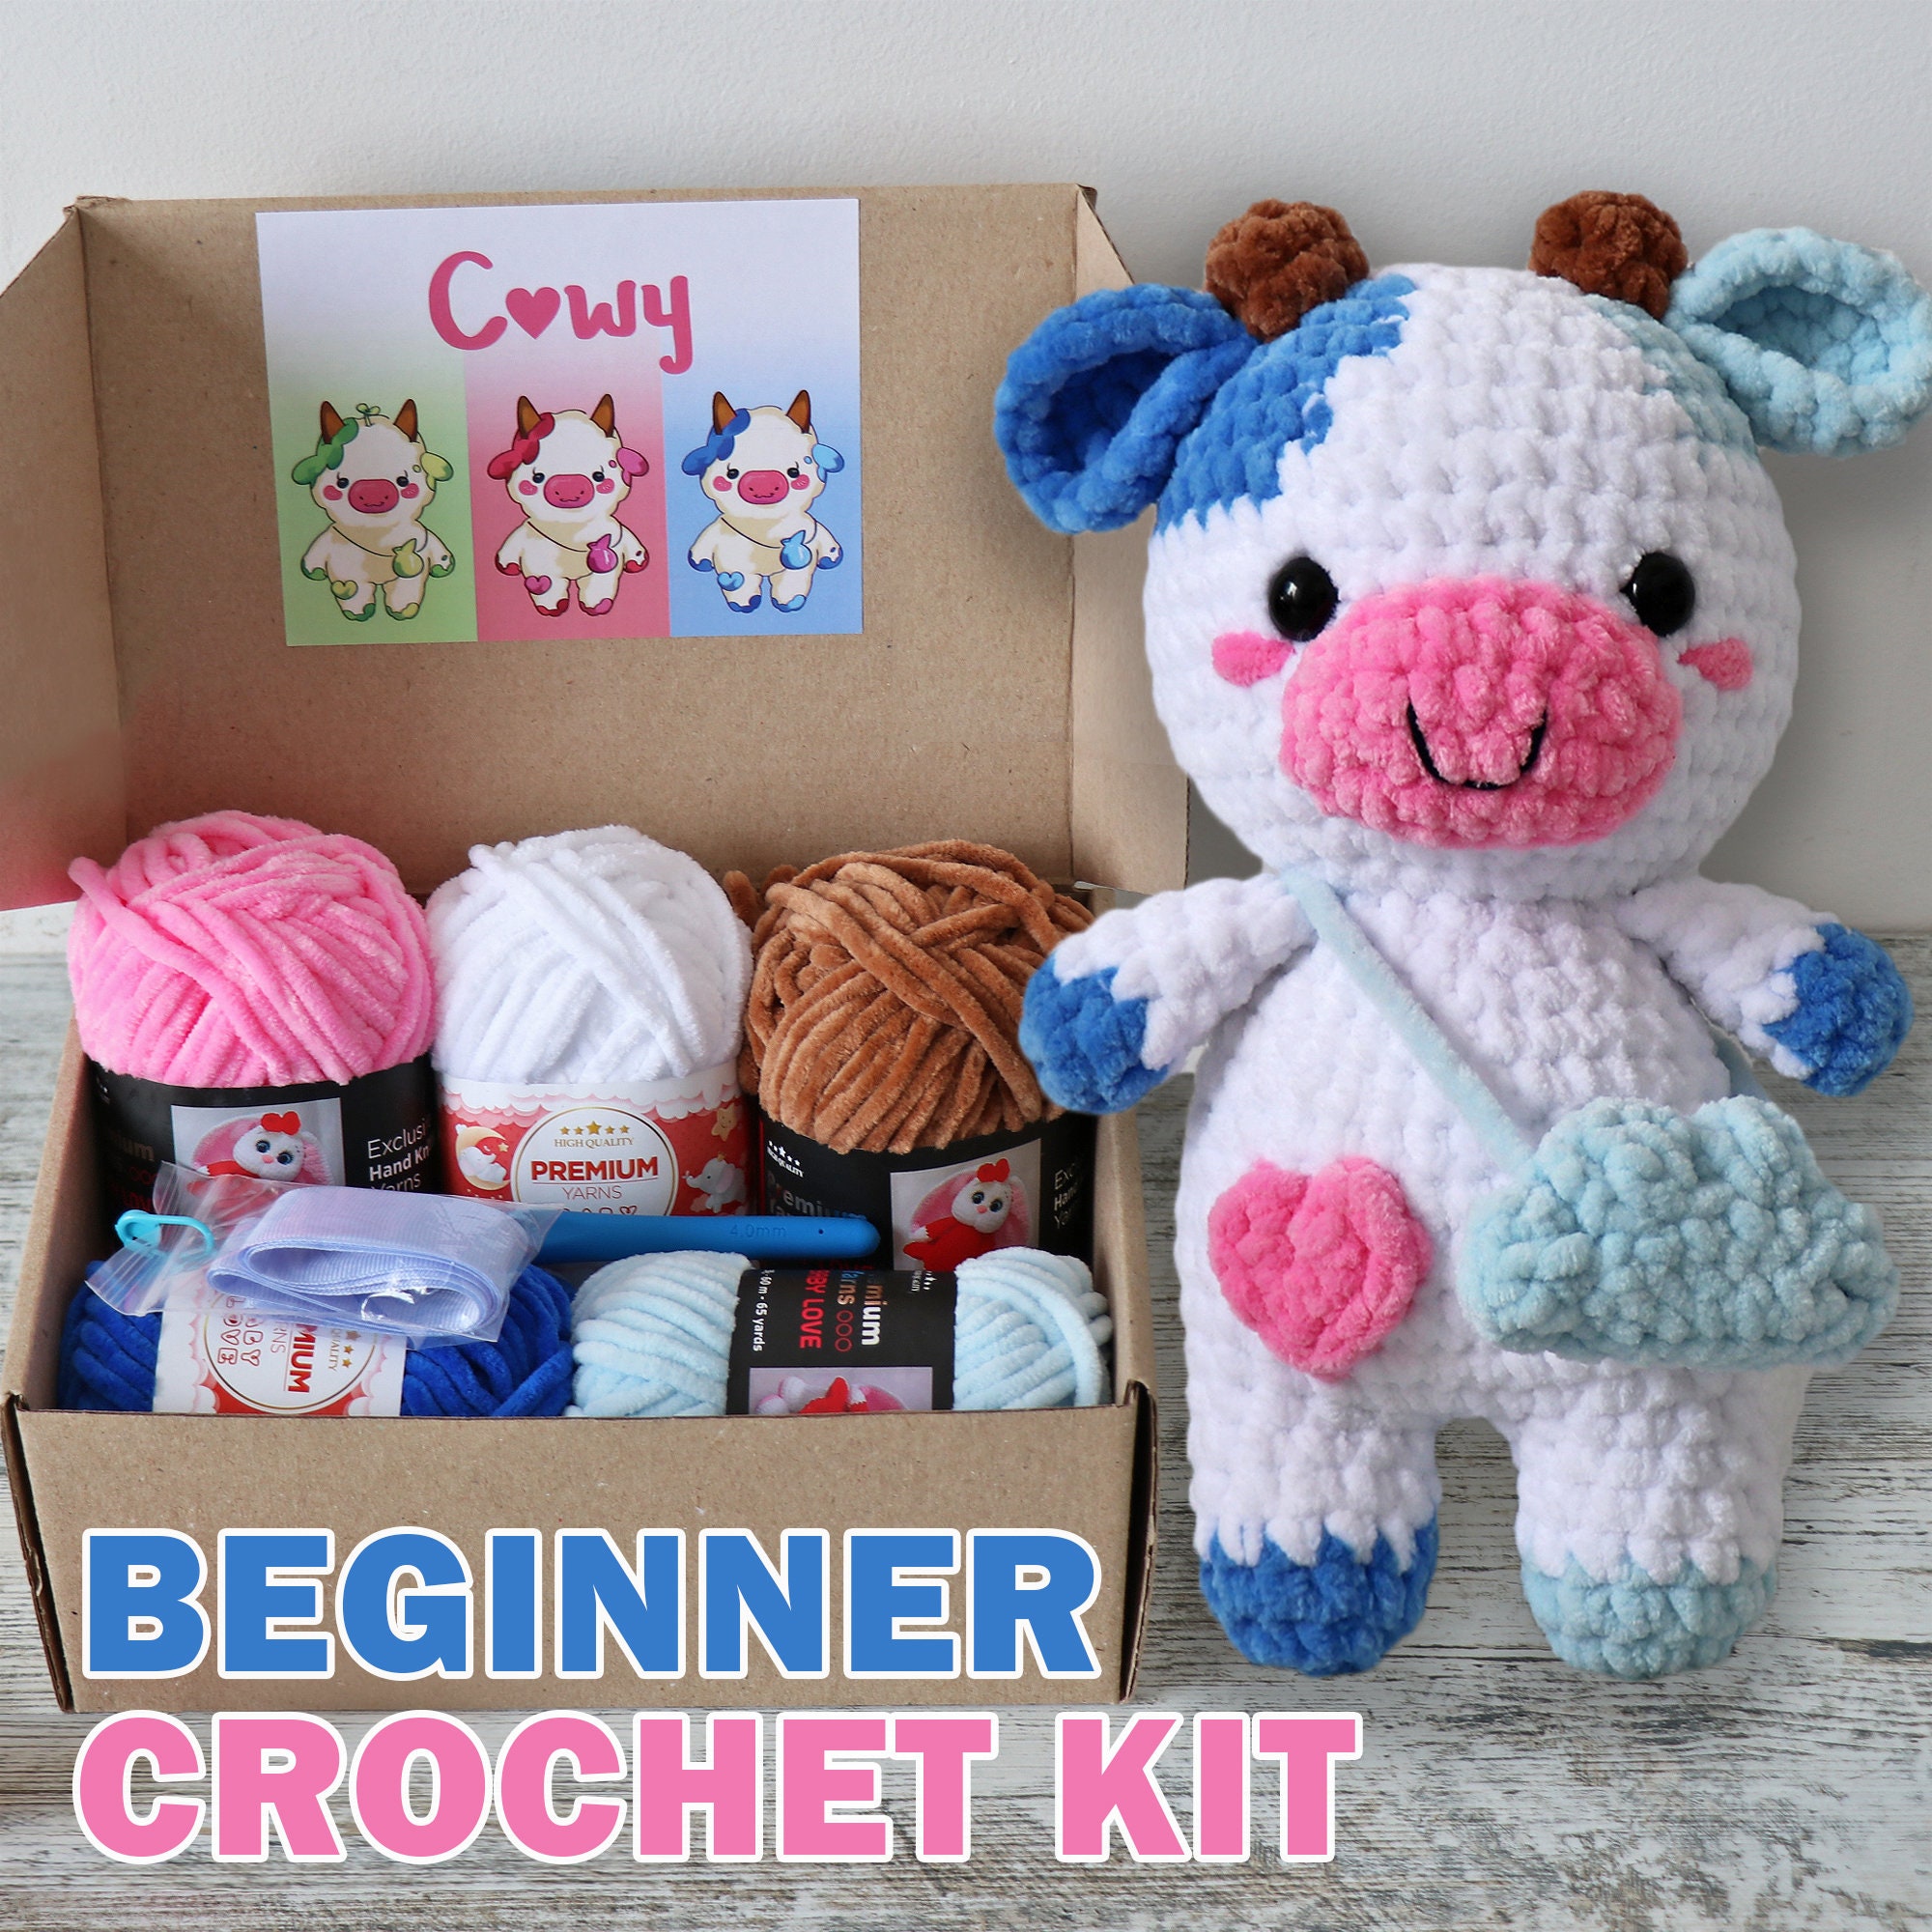 Beginner Crochet Kit, Animal Crochet kit, with Basic Knitting Booklet and  Instructional Video, Complete Crochet Material Pack, Crochet Kit for  Adults